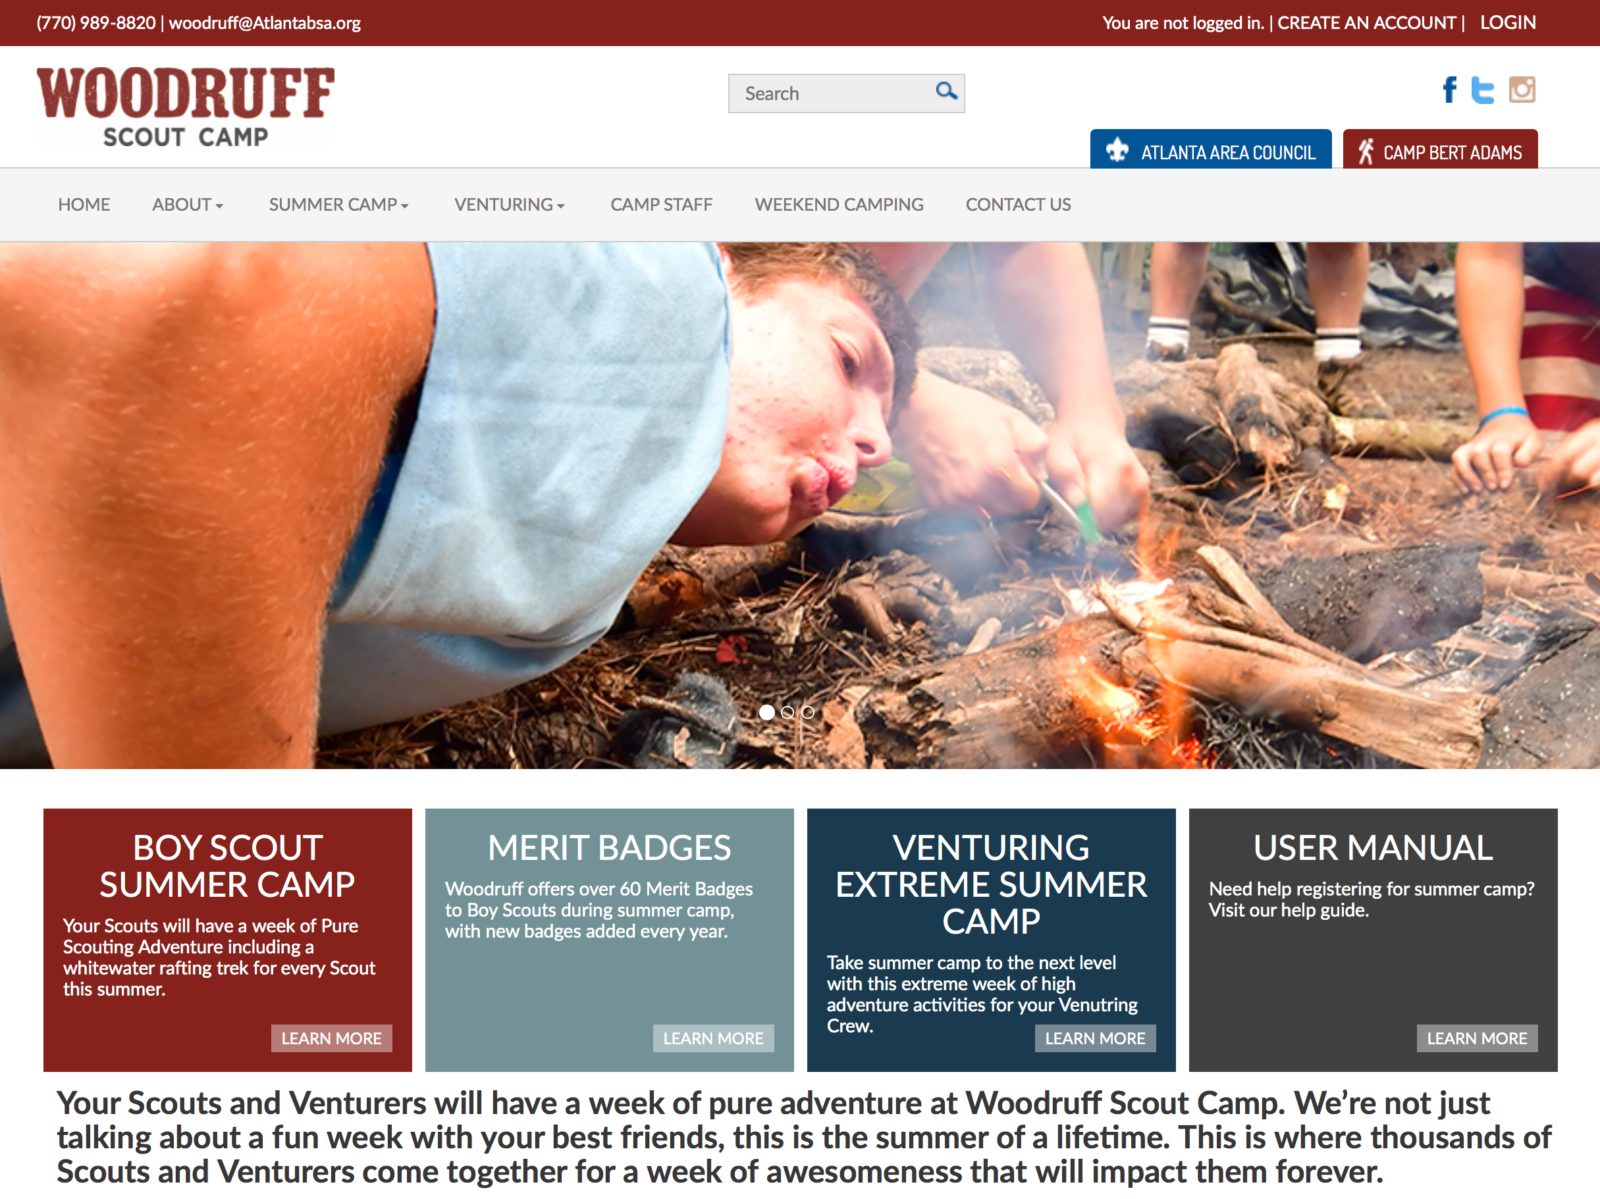 Woodruff Scout Camp website